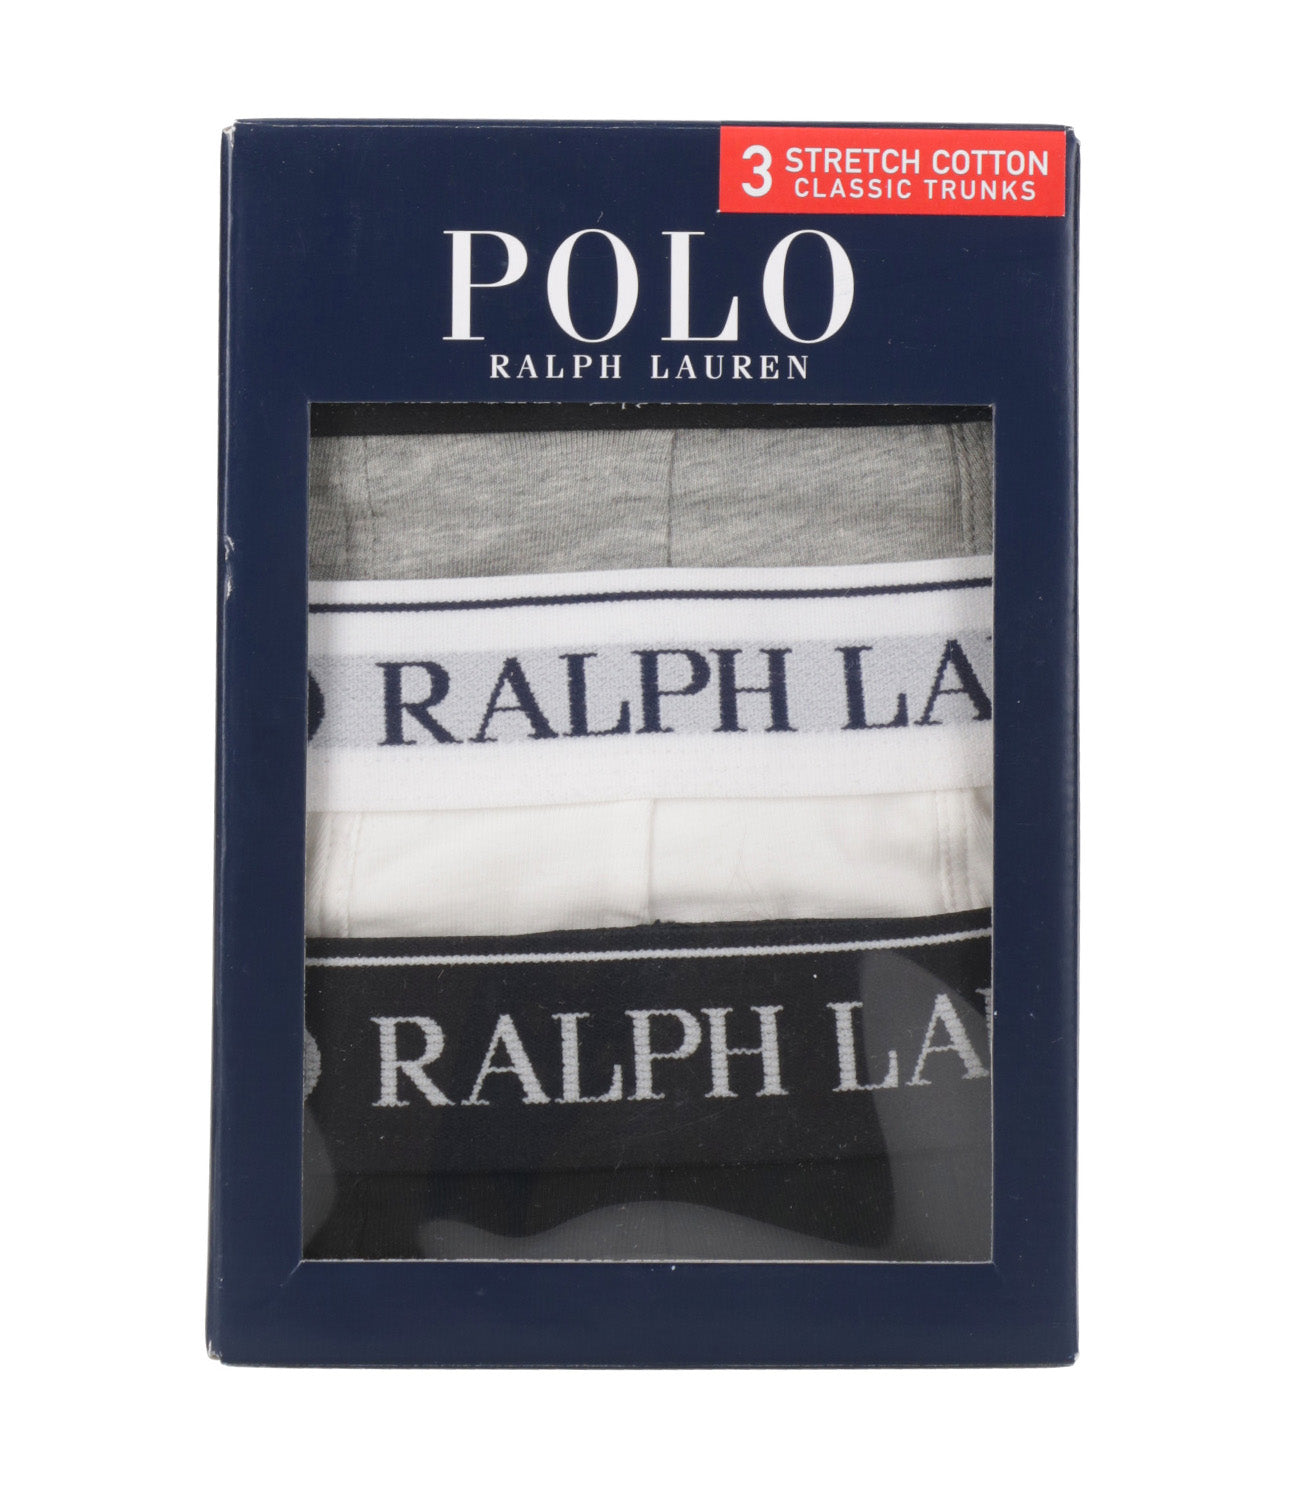 Polo Ralph Lauren | White, Black and Grey Leggings